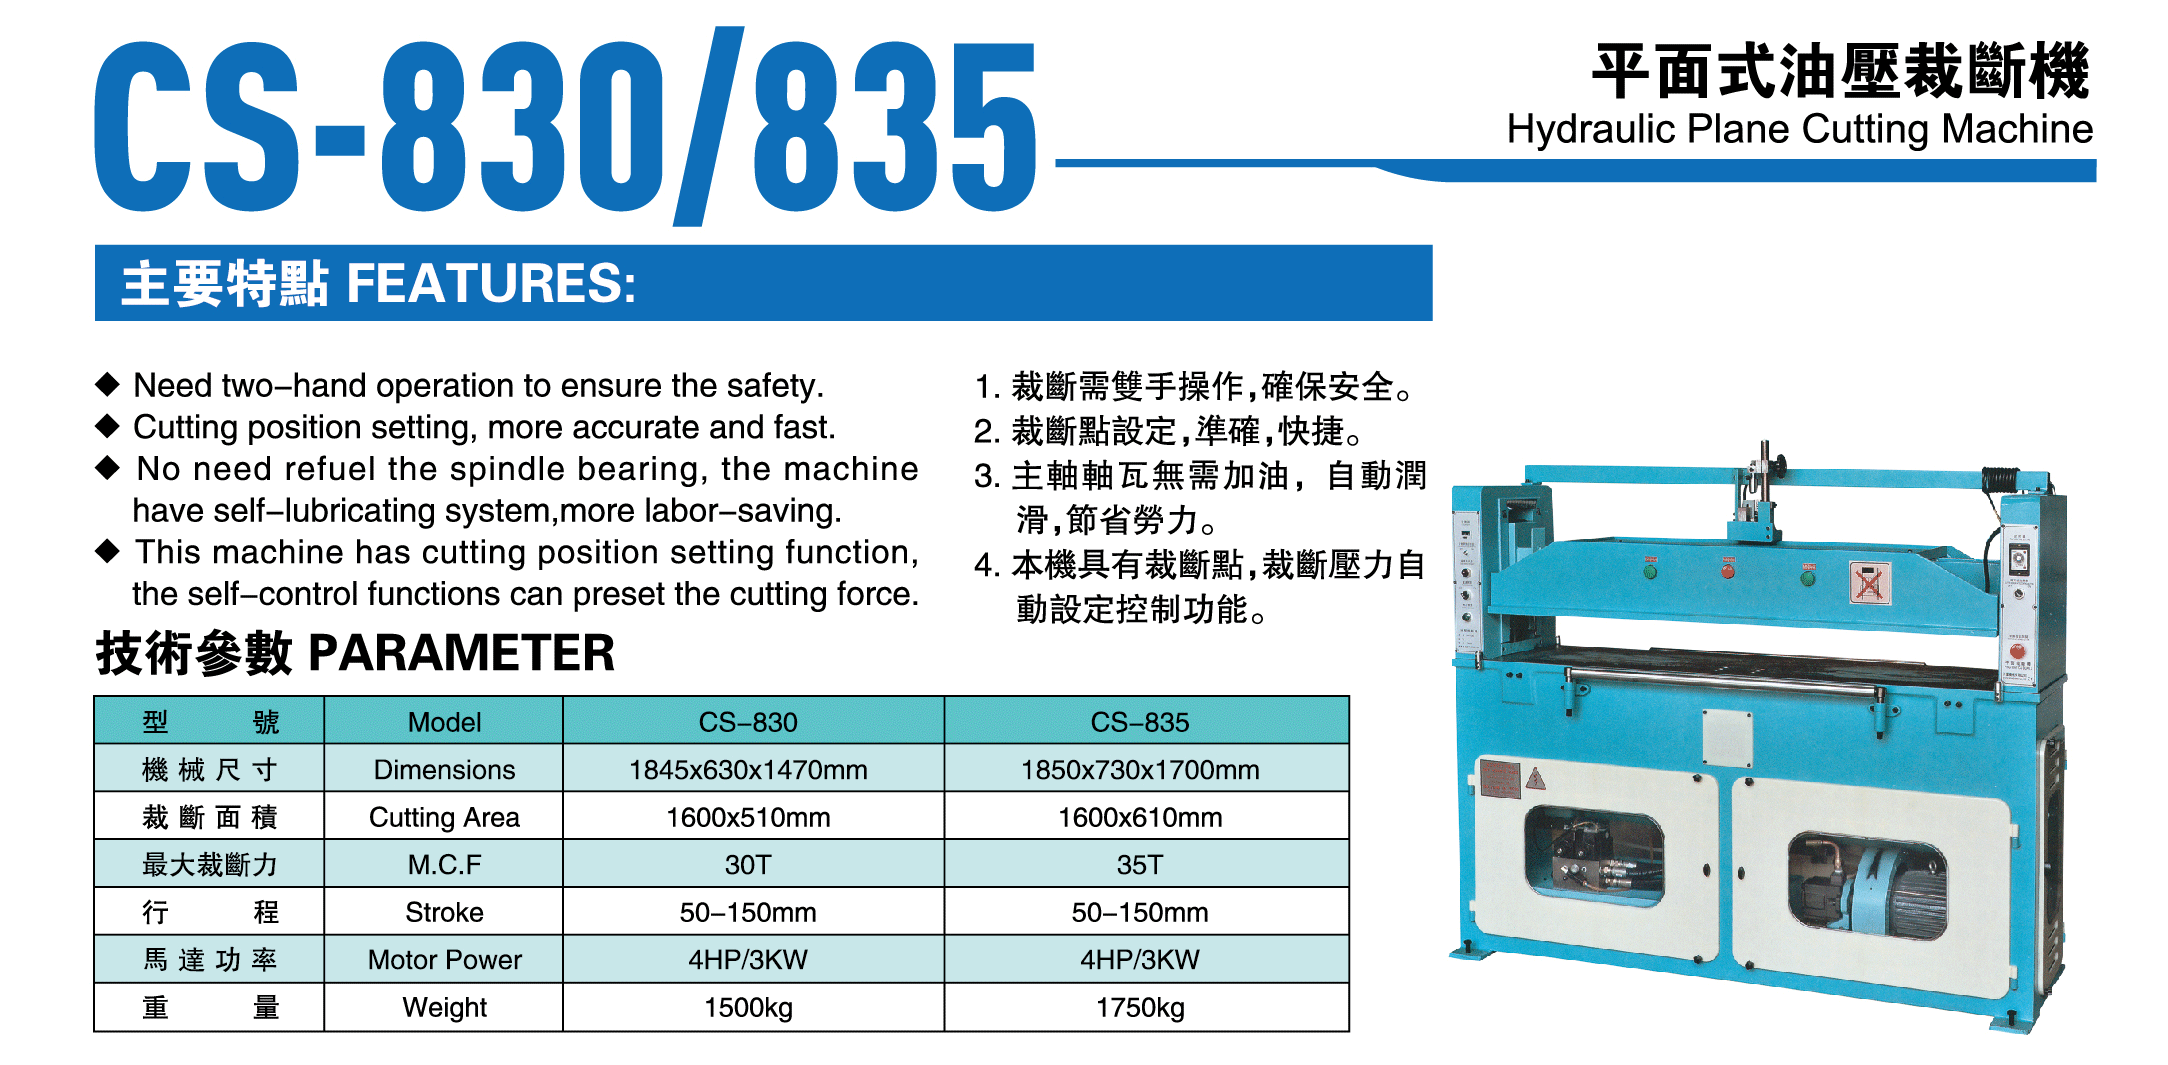 CS-830/835